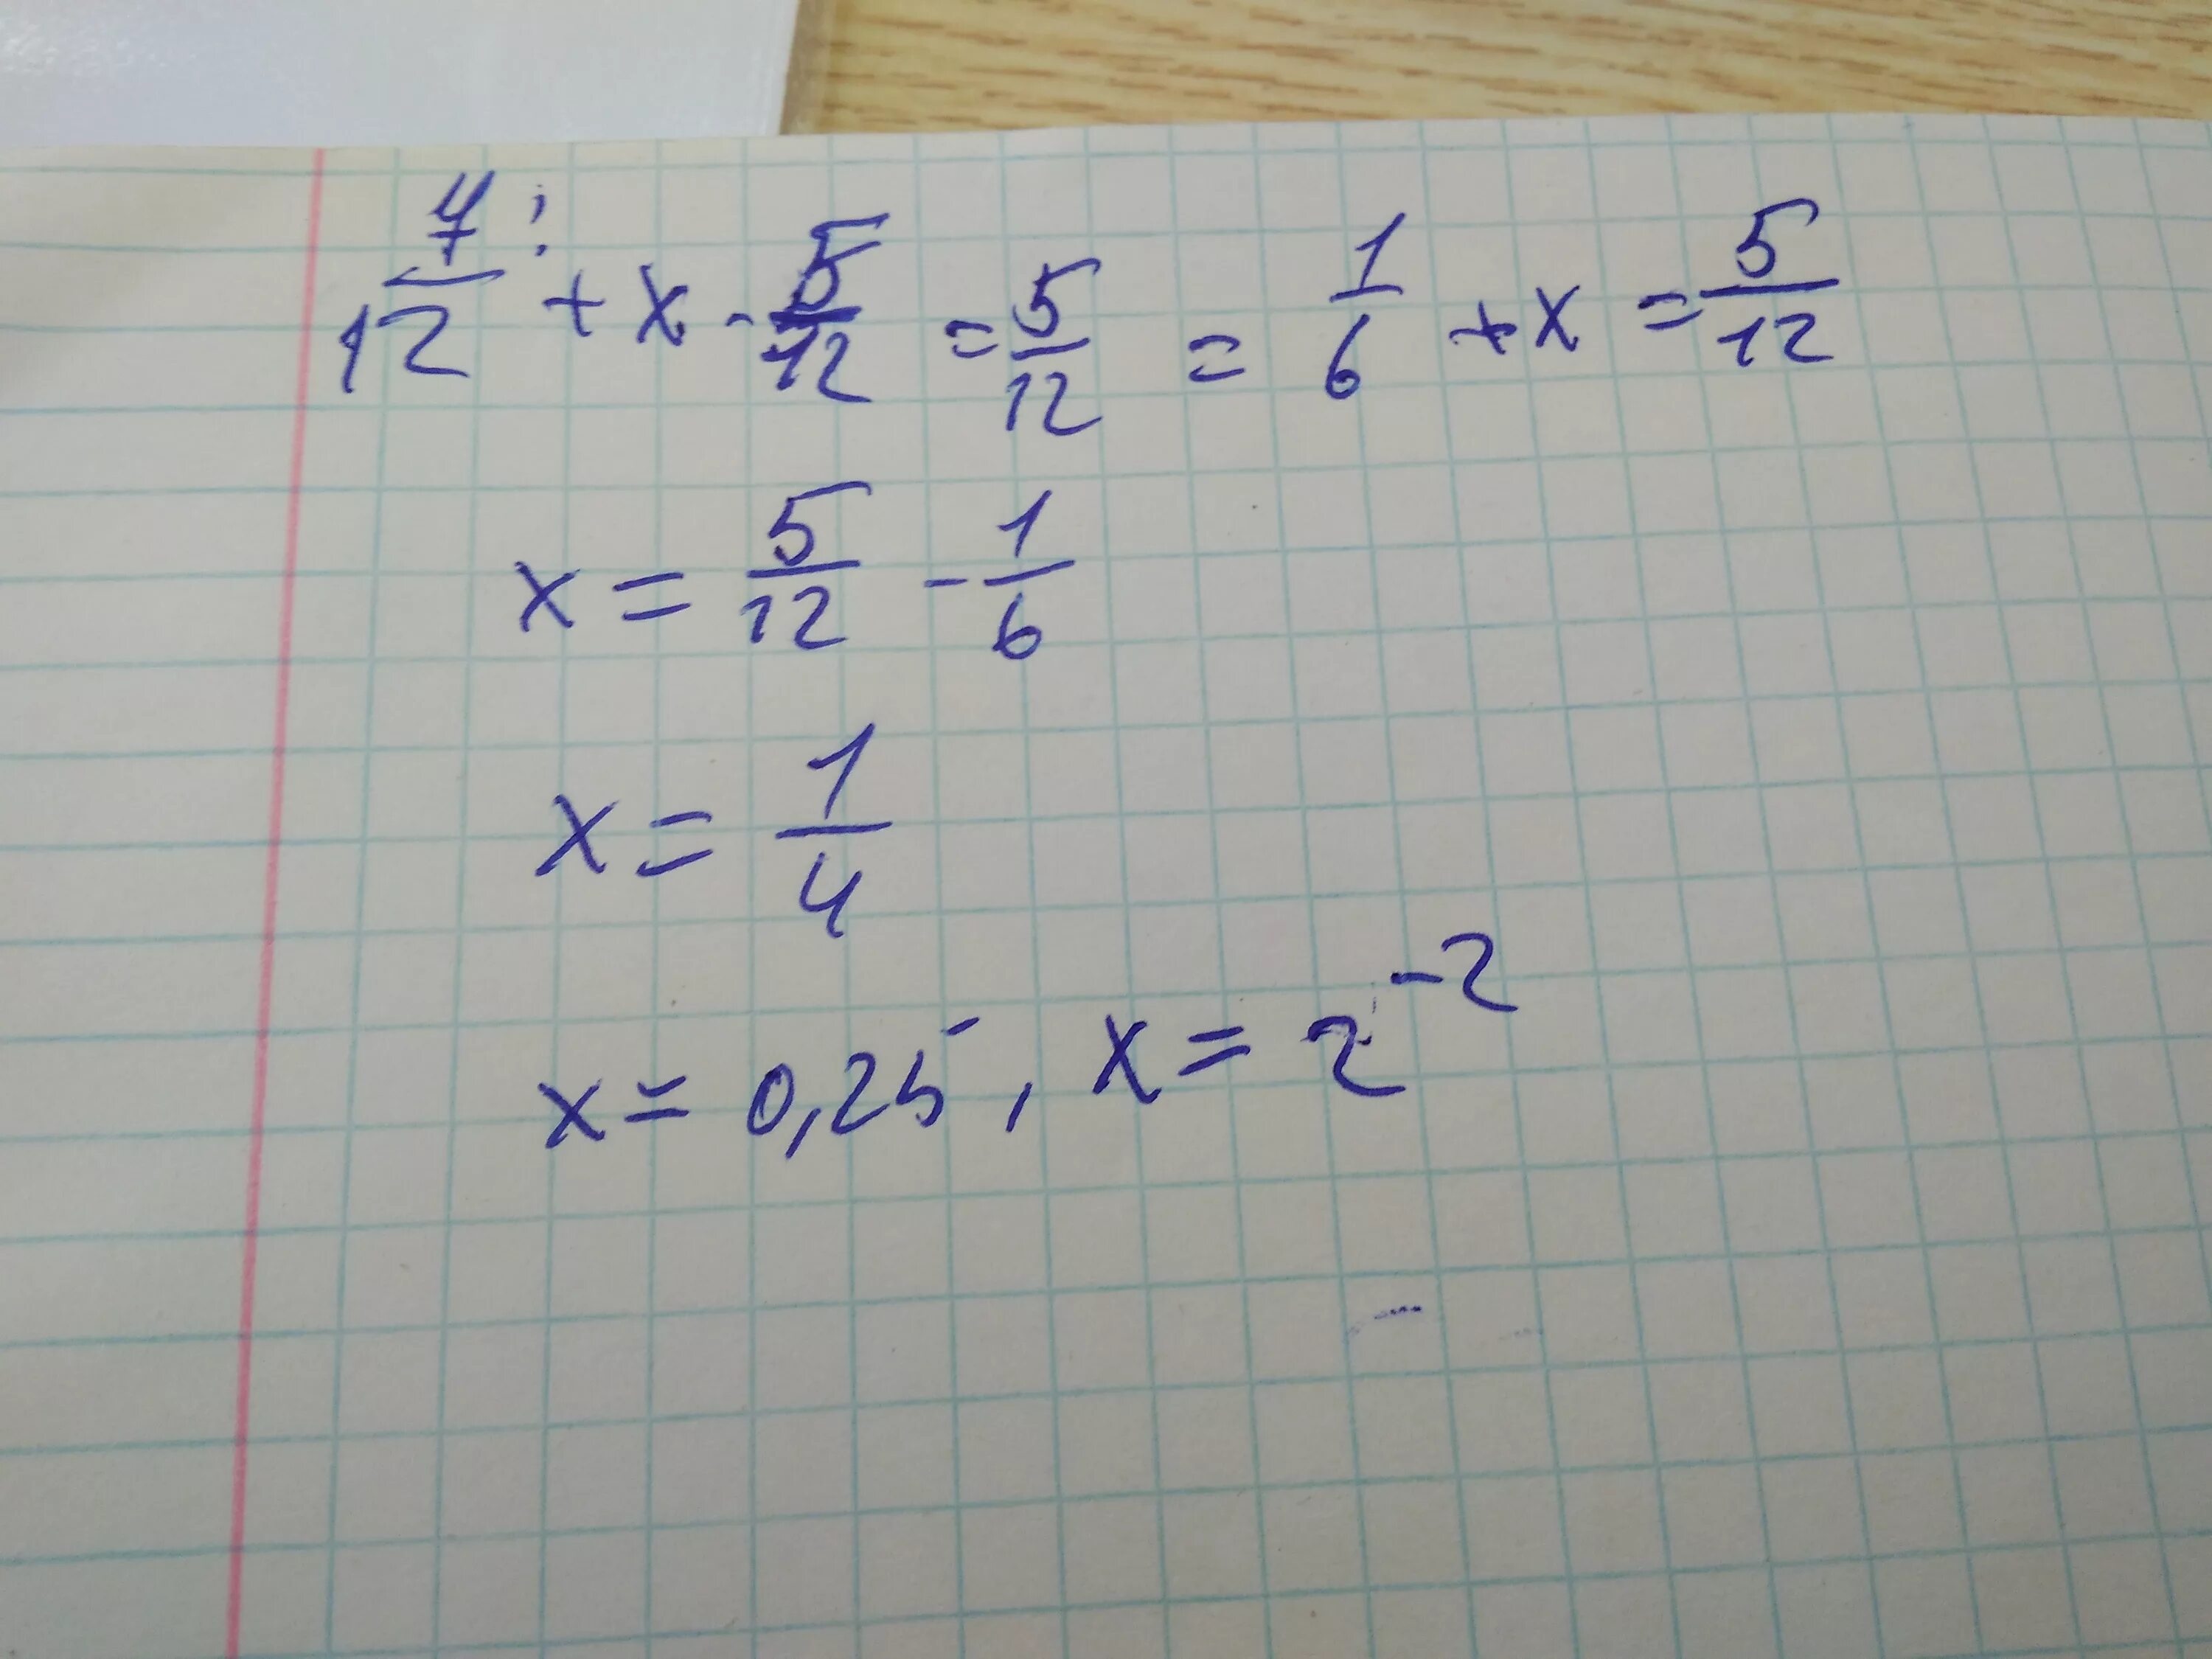 12/Х+5 -12/5. 5х=12. Х/5=5/12. 7/12+Х-5/12=5/12. 3x 5 12 x решите уравнение